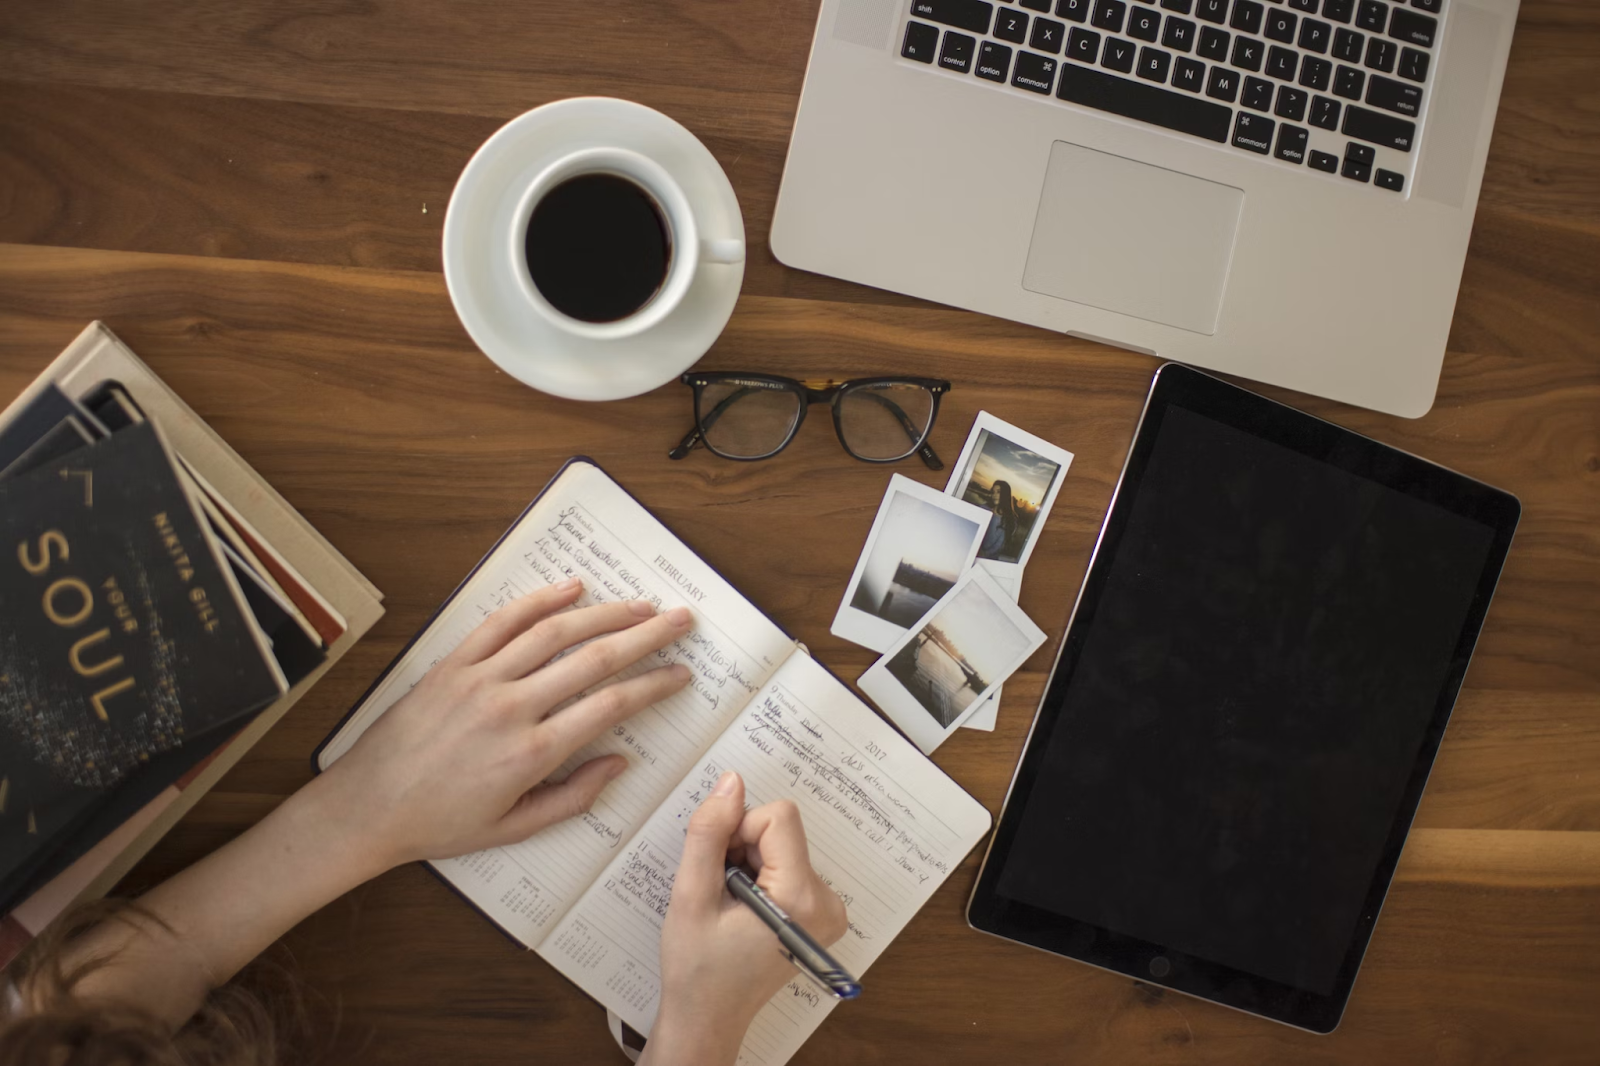 Mesa de madeira com um laptop, um tablet, livros, uma xícara de café e um caderno. Uma pessoa está sentada na mesa escrevendo no caderno